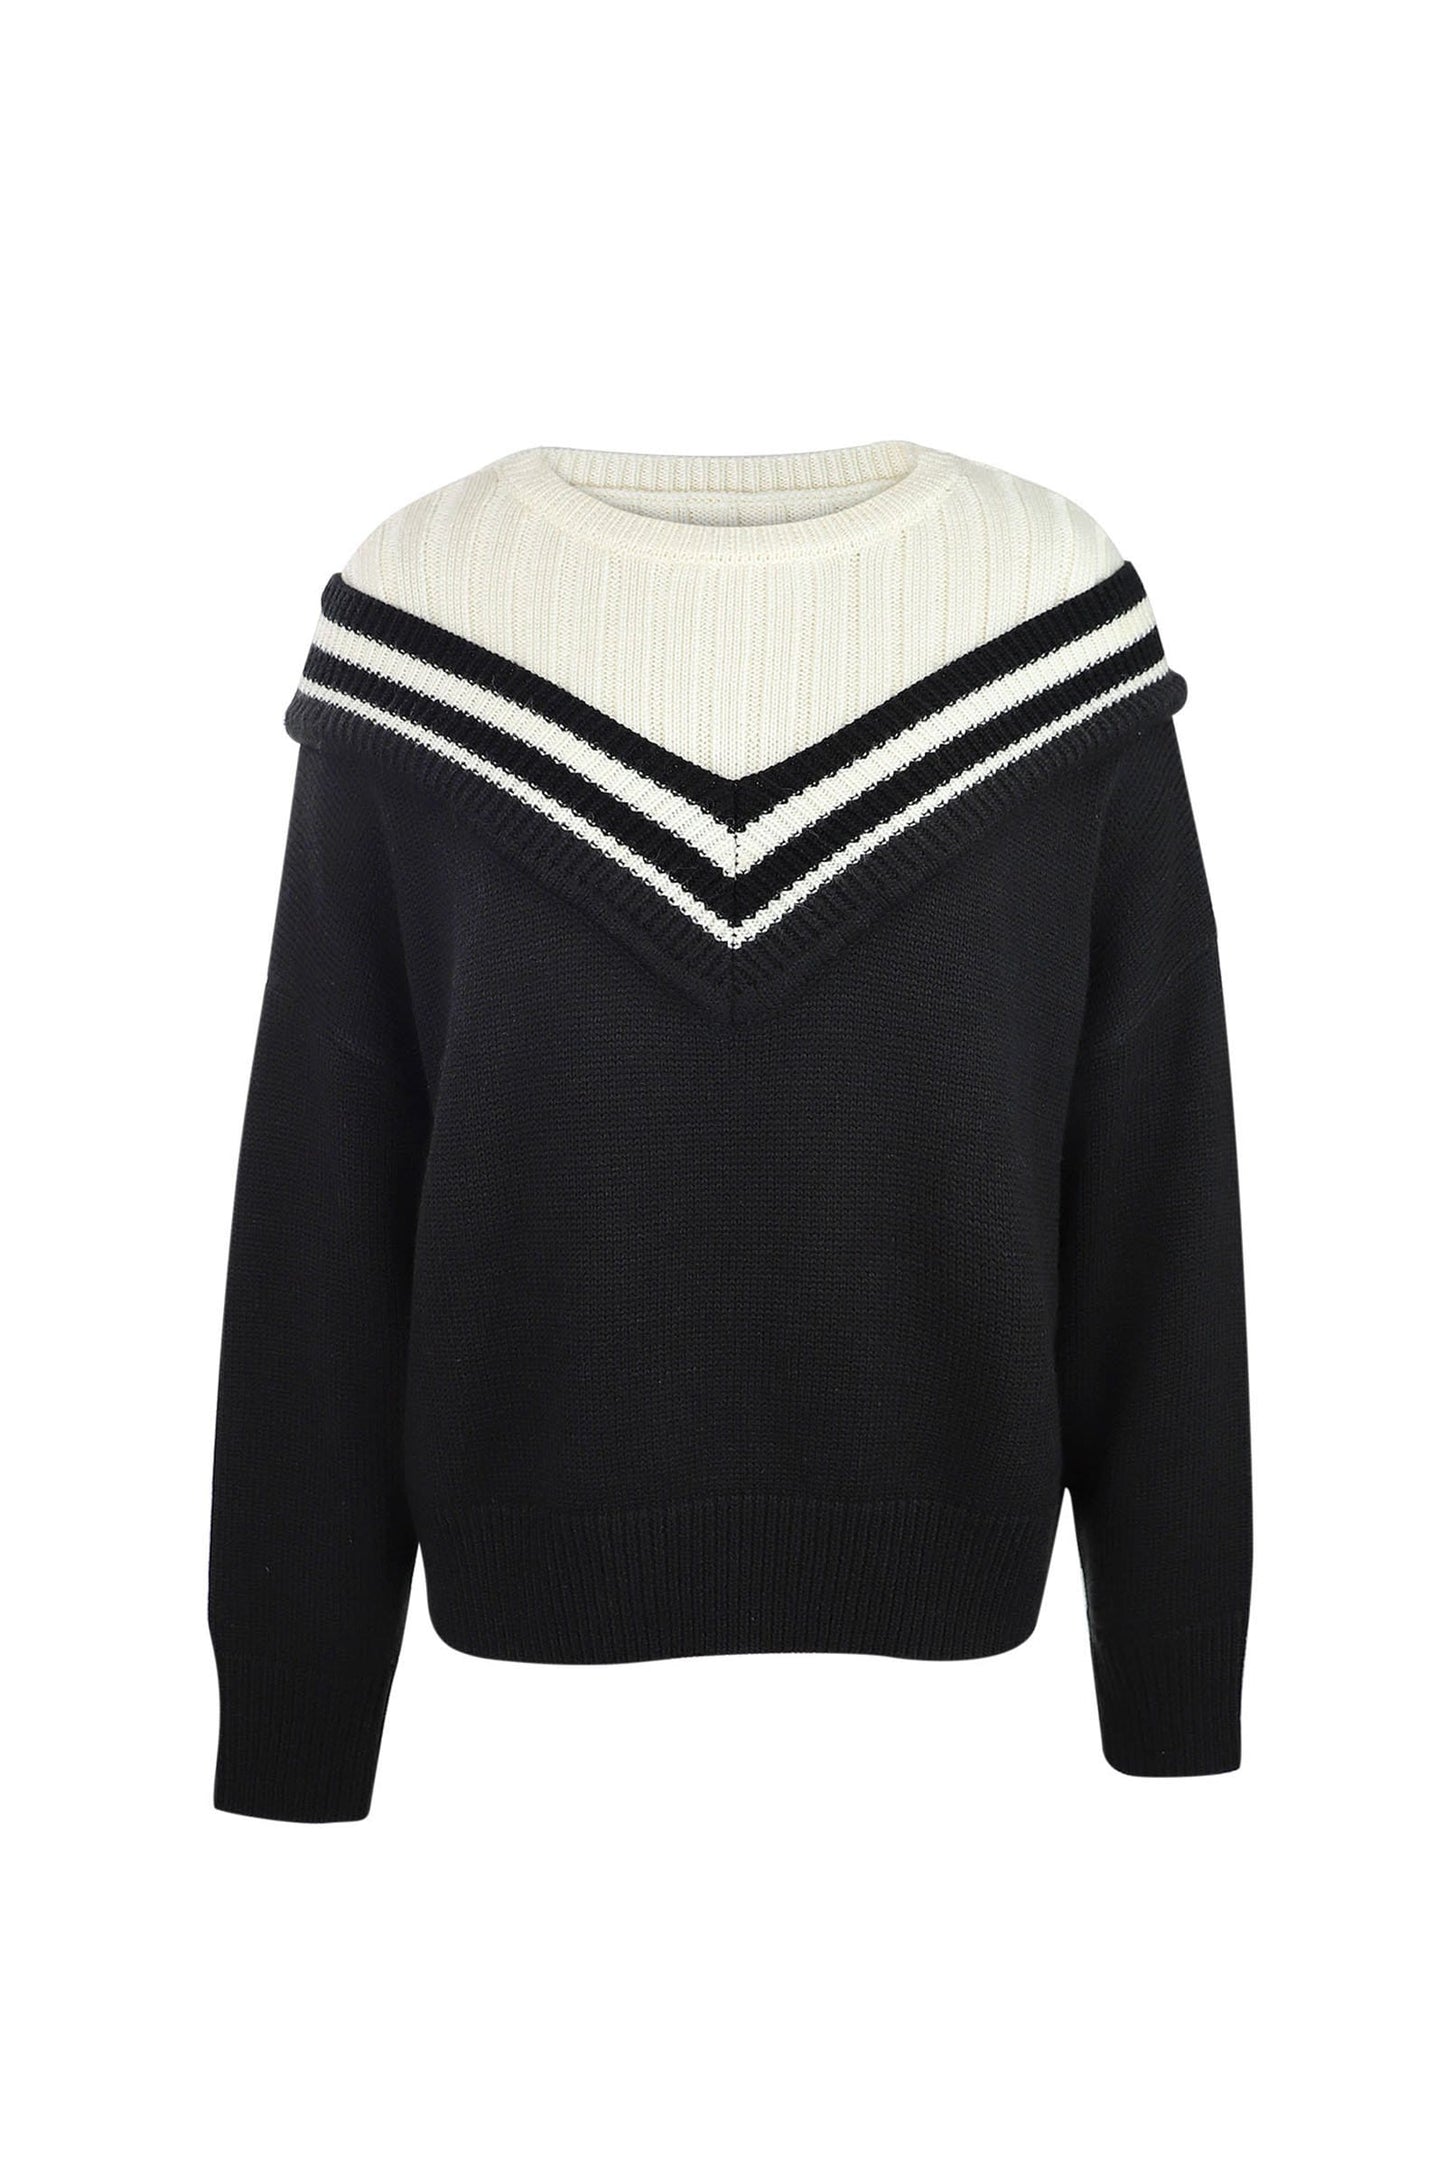 Hortense Varsity Black Mixed Sweater